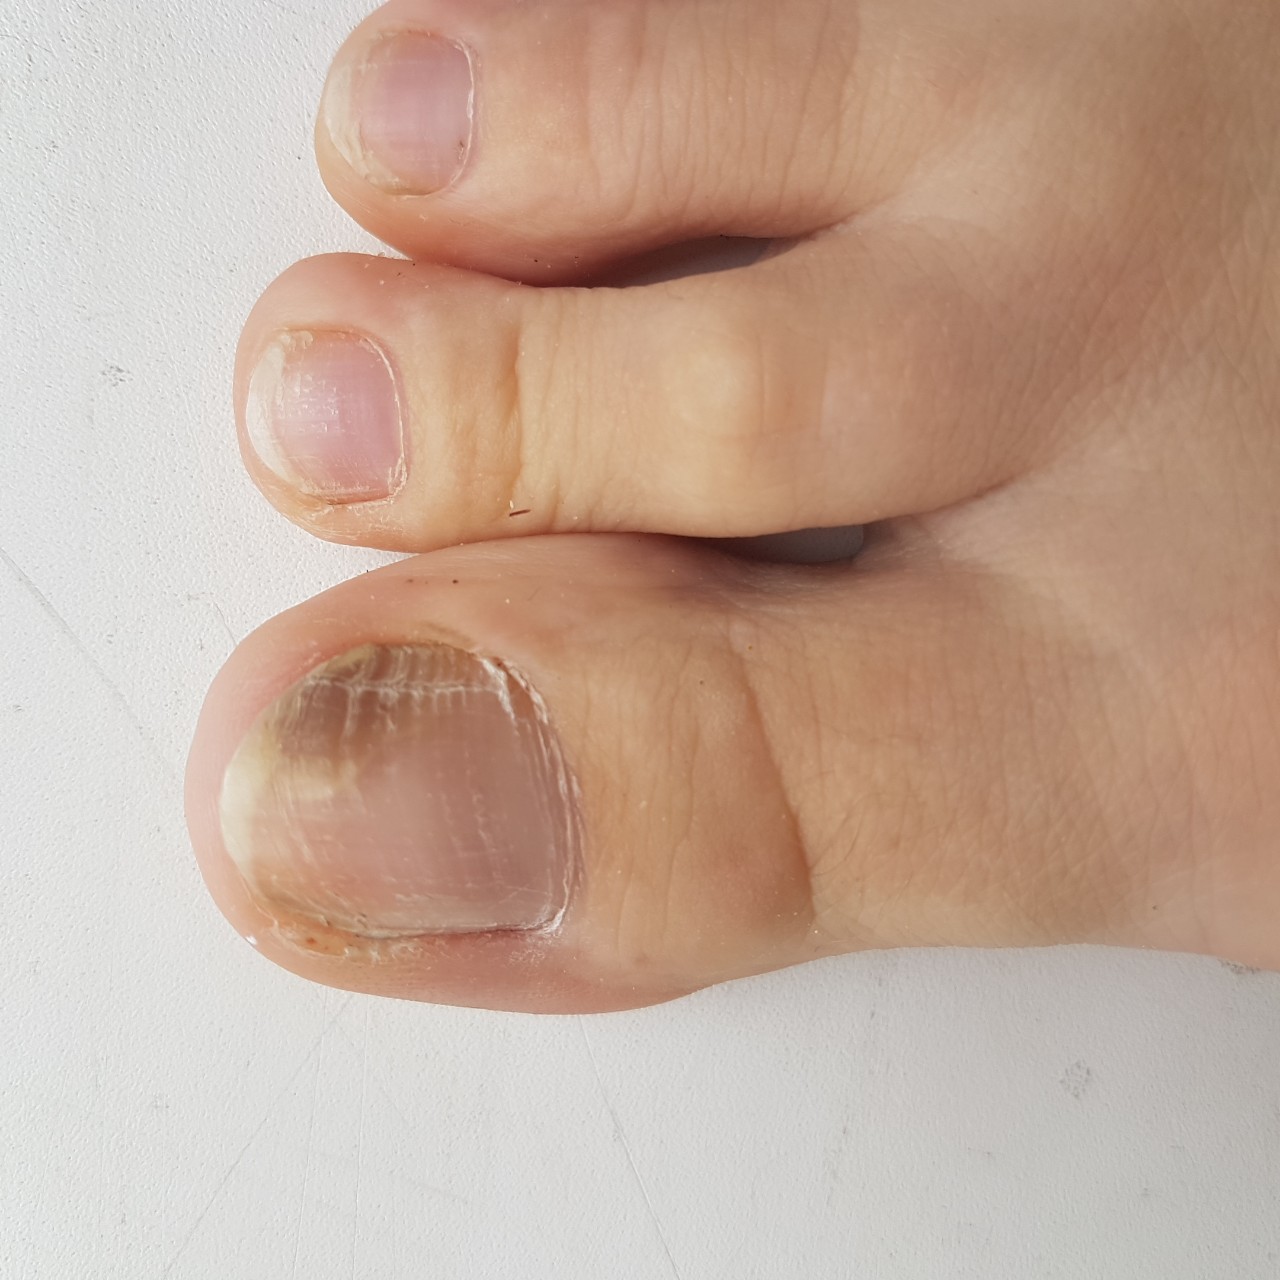 Меланома под ногтем на ноге